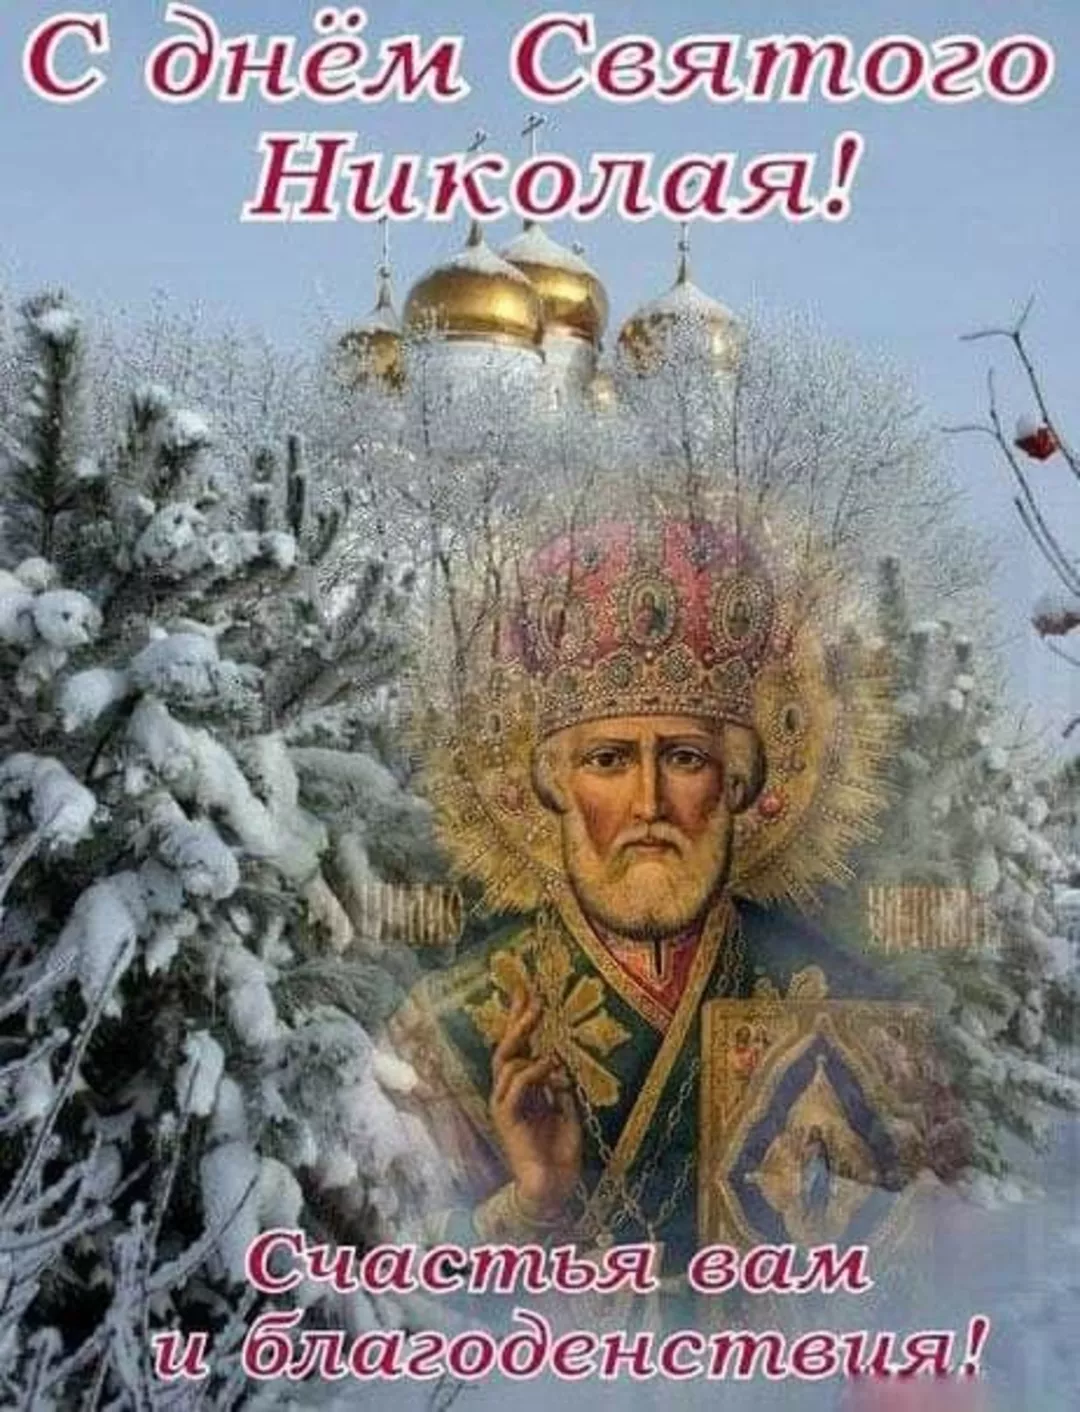 Николаев день декабрь